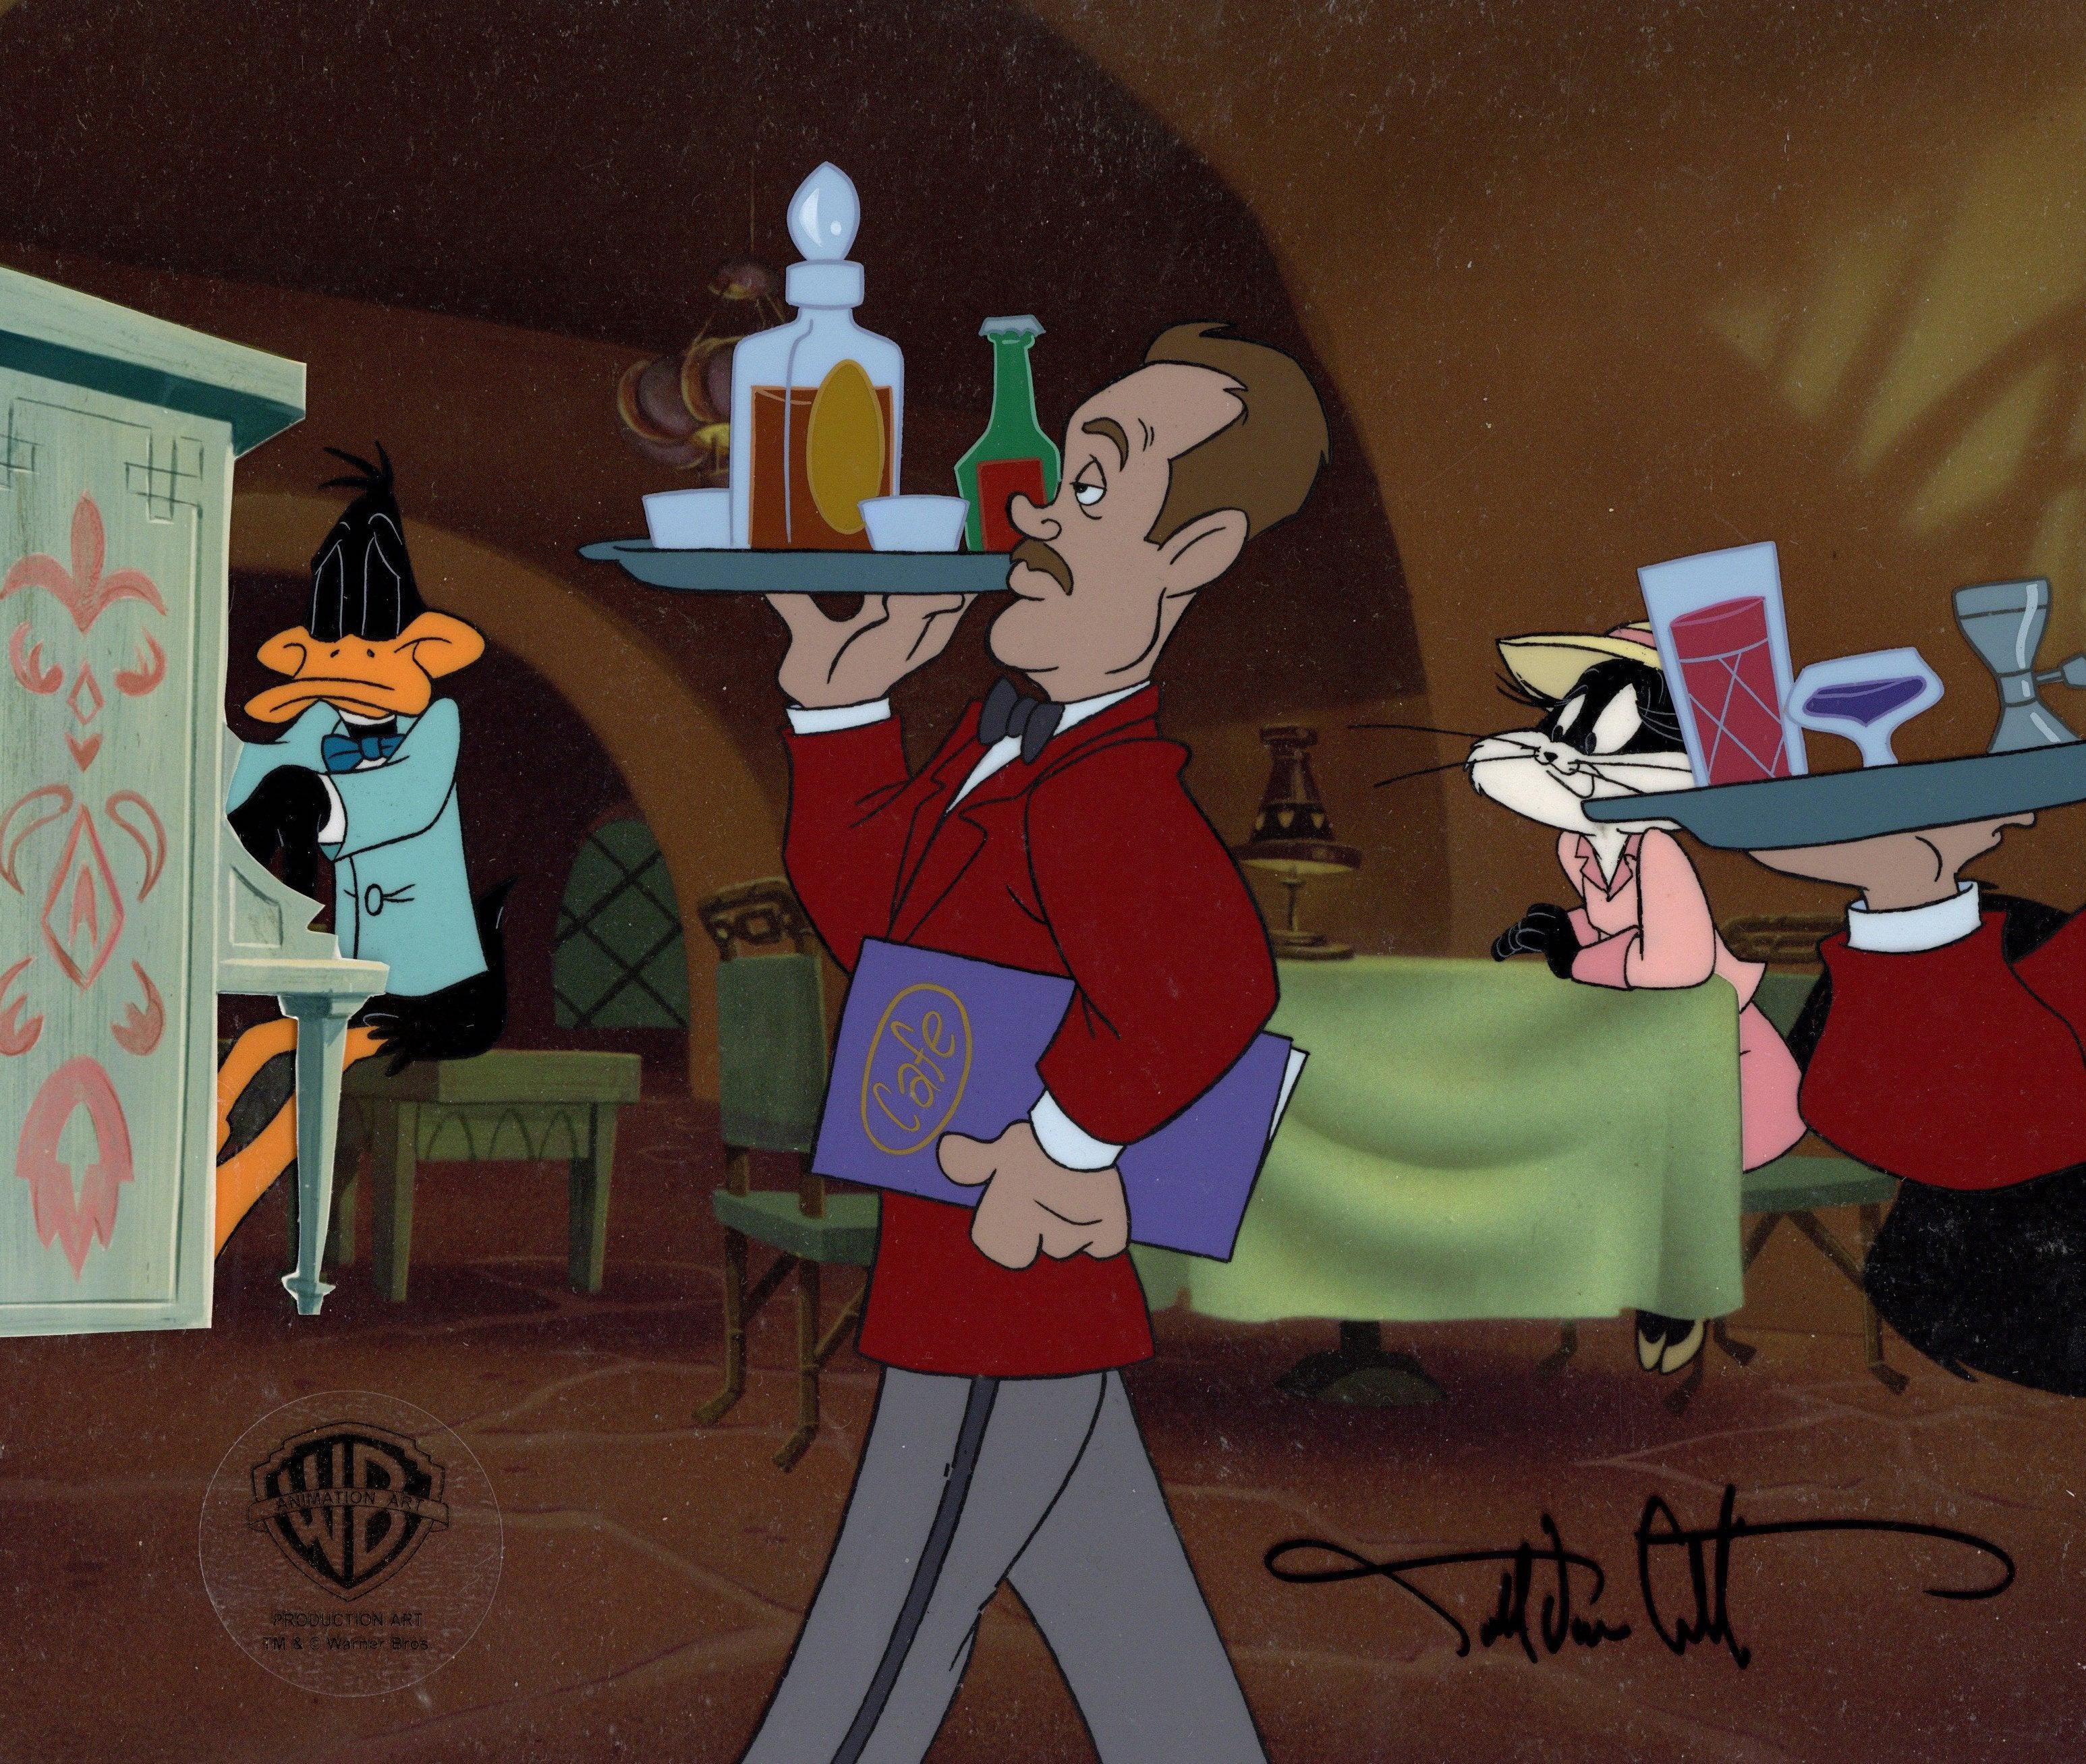 MEDIUM: Originalproduktion Cel auf gedrucktem Hintergrund 
BILDGRÖSSE: 12,5 x 10,5"
PRODUKTION: Looney Tunes, Carrotblanca
GEZEICHNET: Darrell Van Citters
SKU: IFA8092

ÜBER DAS BILD: Looney Tunes ist eine Serie von animierten Kurzfilmen von Warner